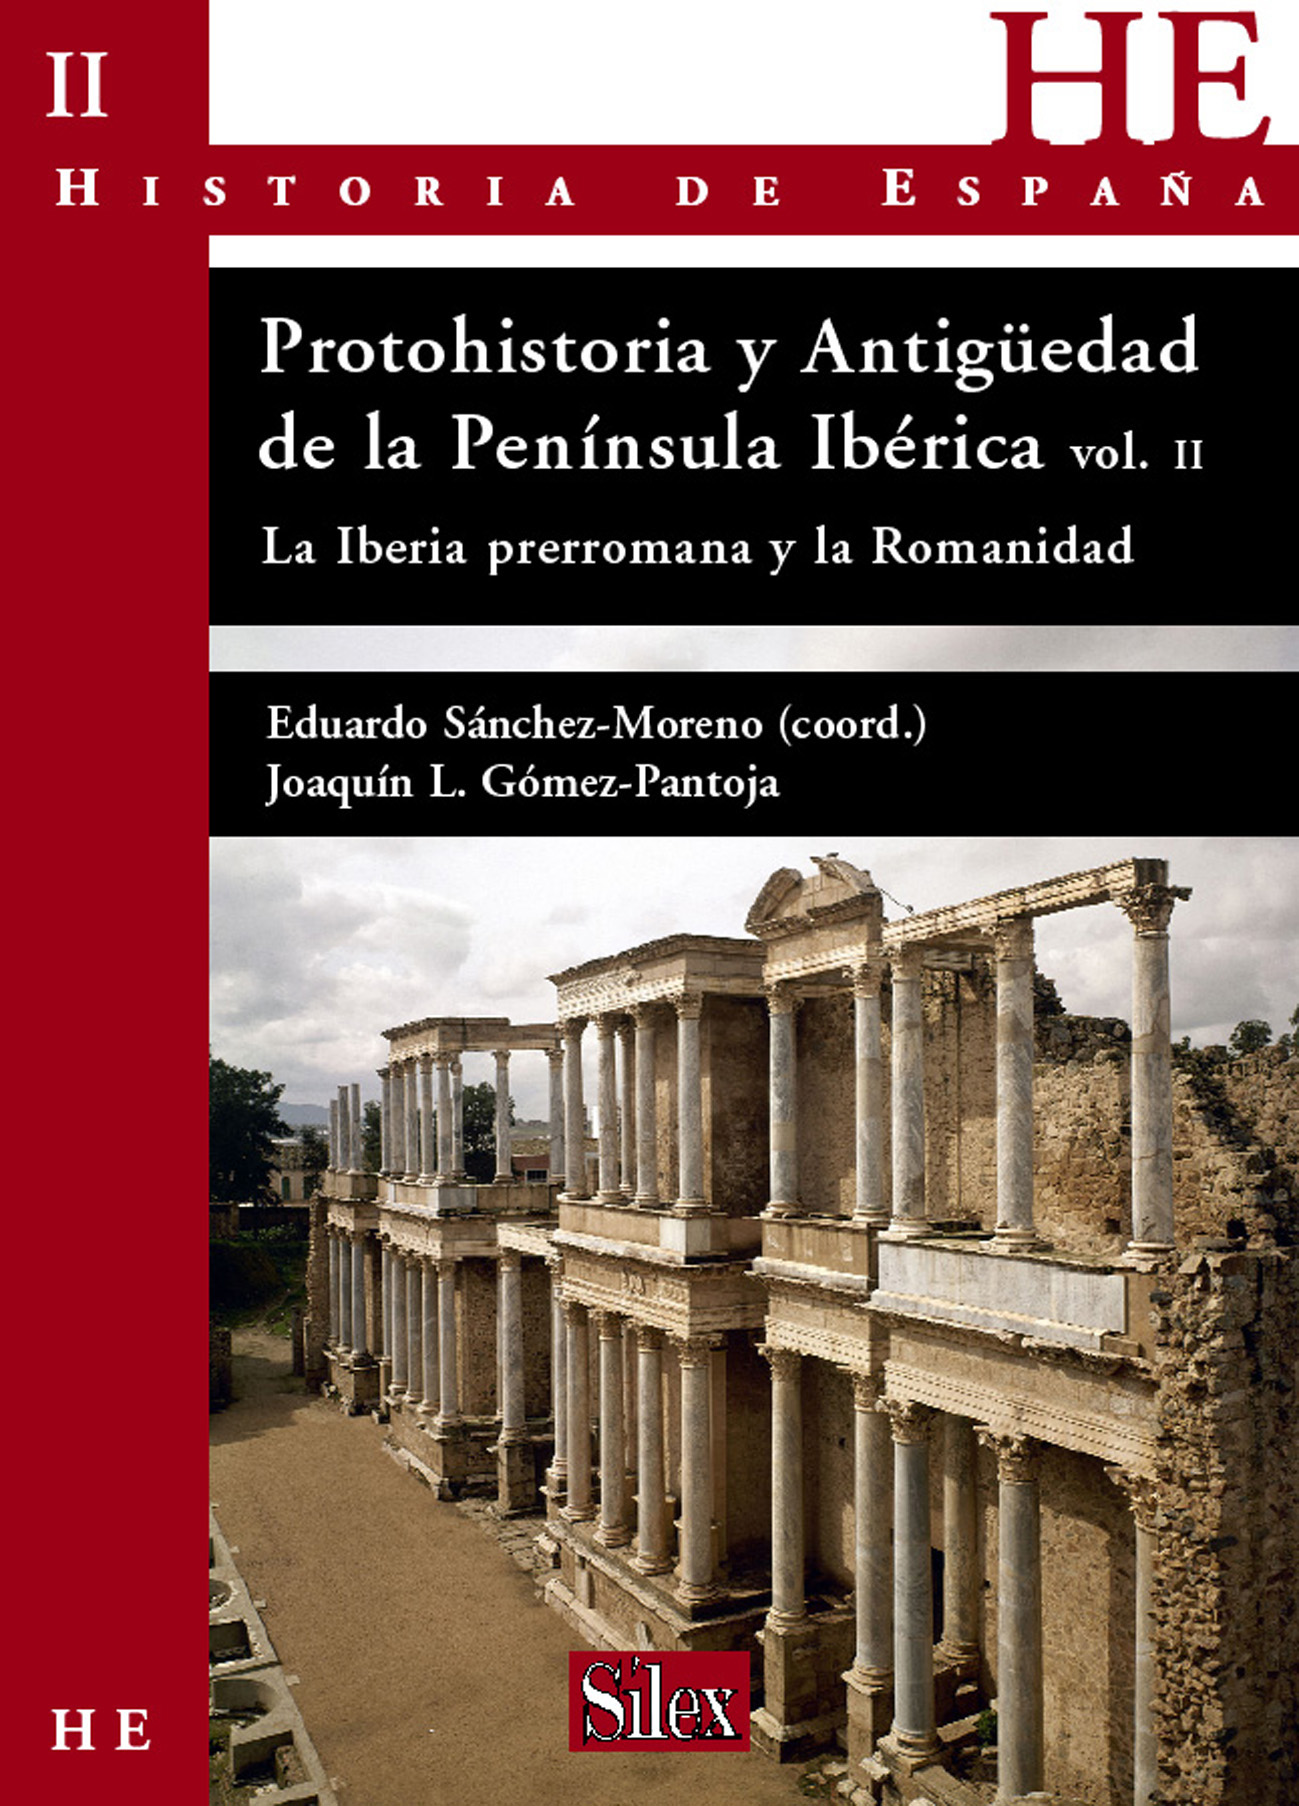 Protohistoria y Antiguedad de la Península Ibérica